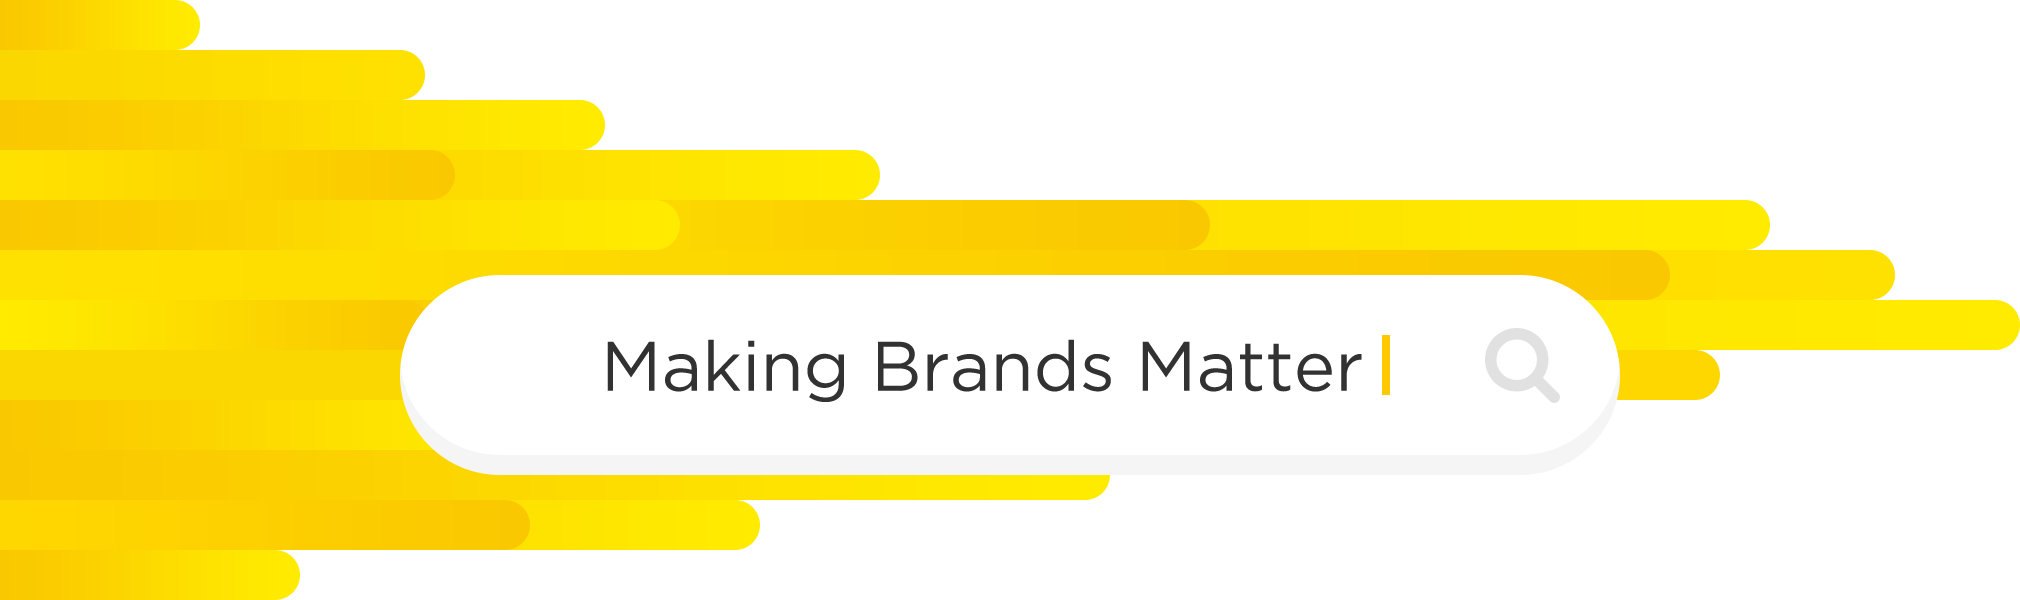 Making Brands Matter.